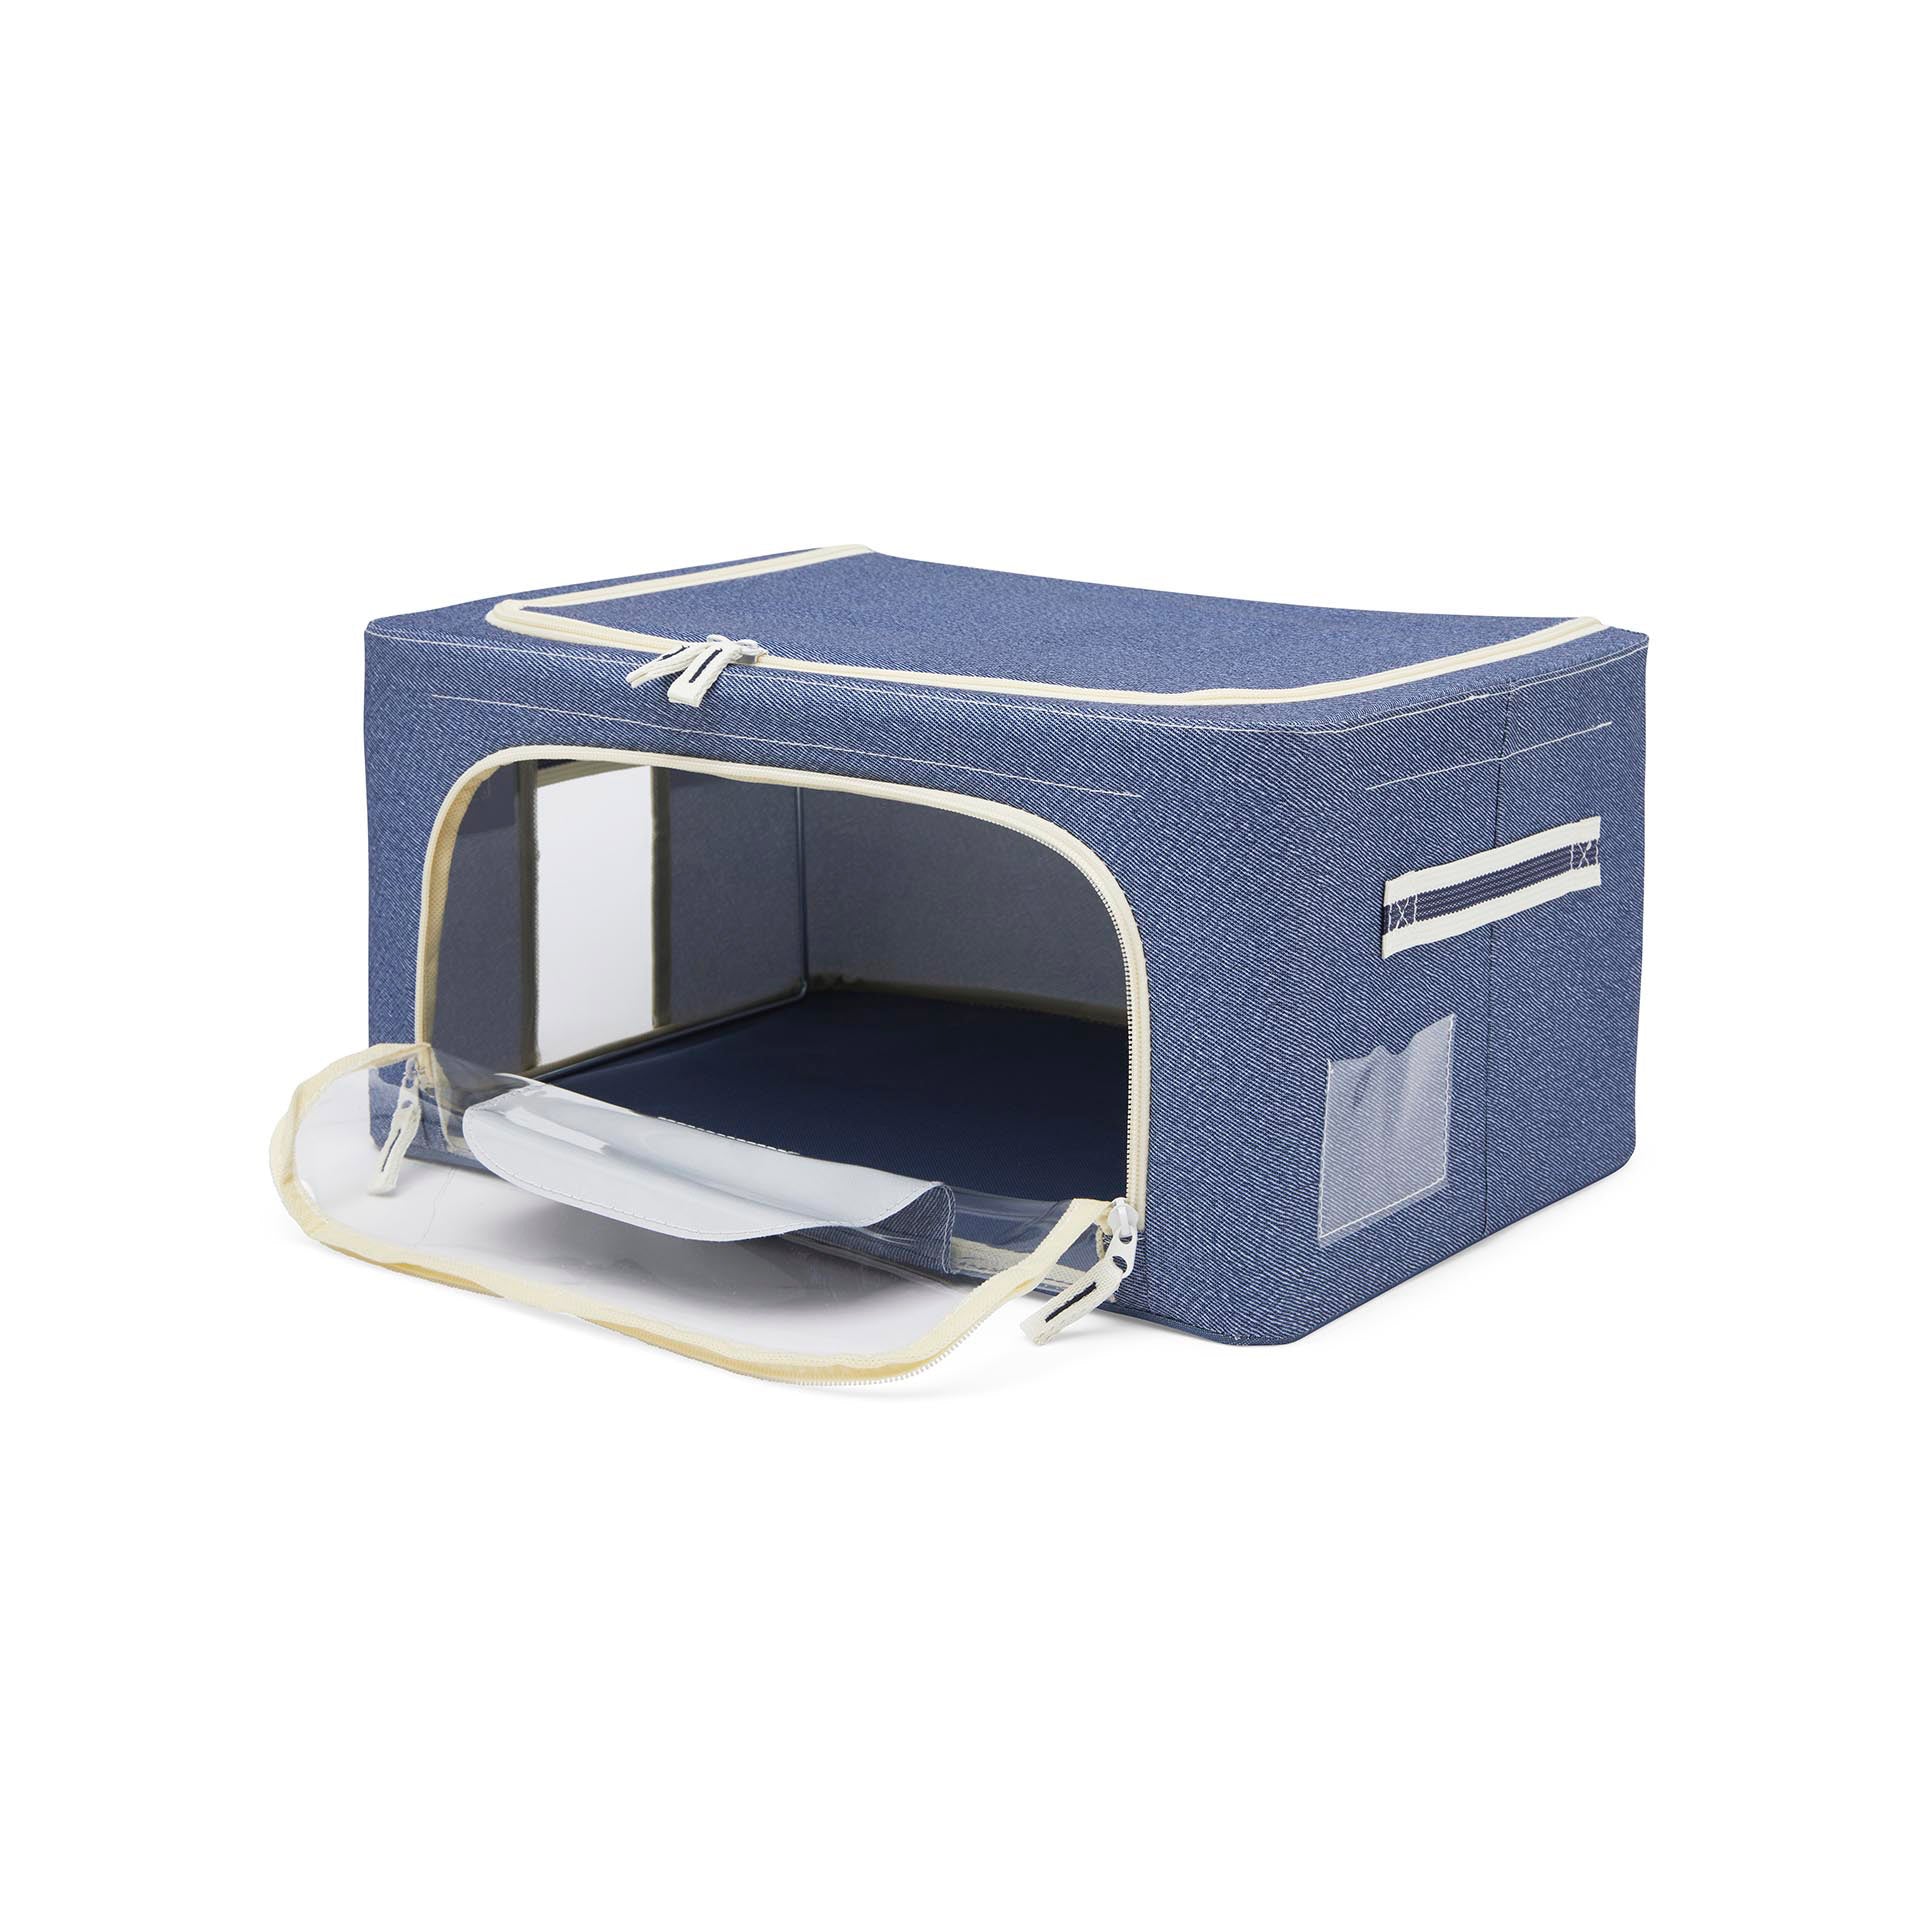 box scatola contenitore salvaspazio per armadio in tessuto colore blu nuovo